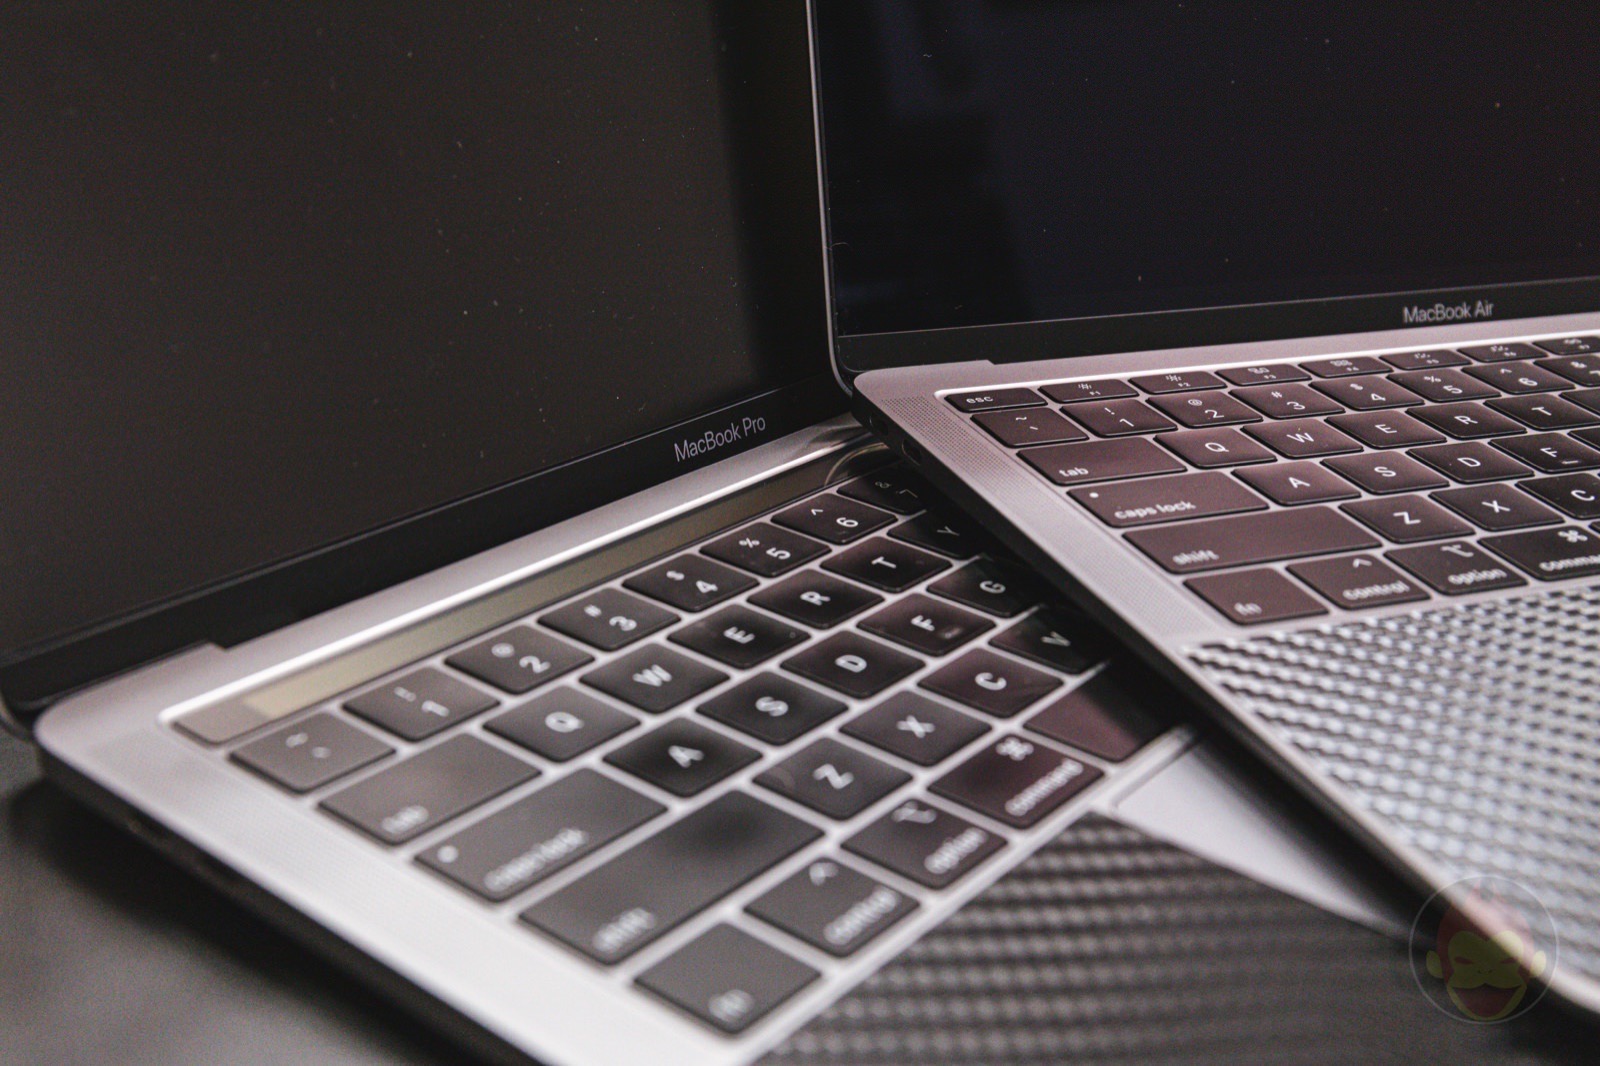 MacBookAir and MacbookPro 13inch models 01